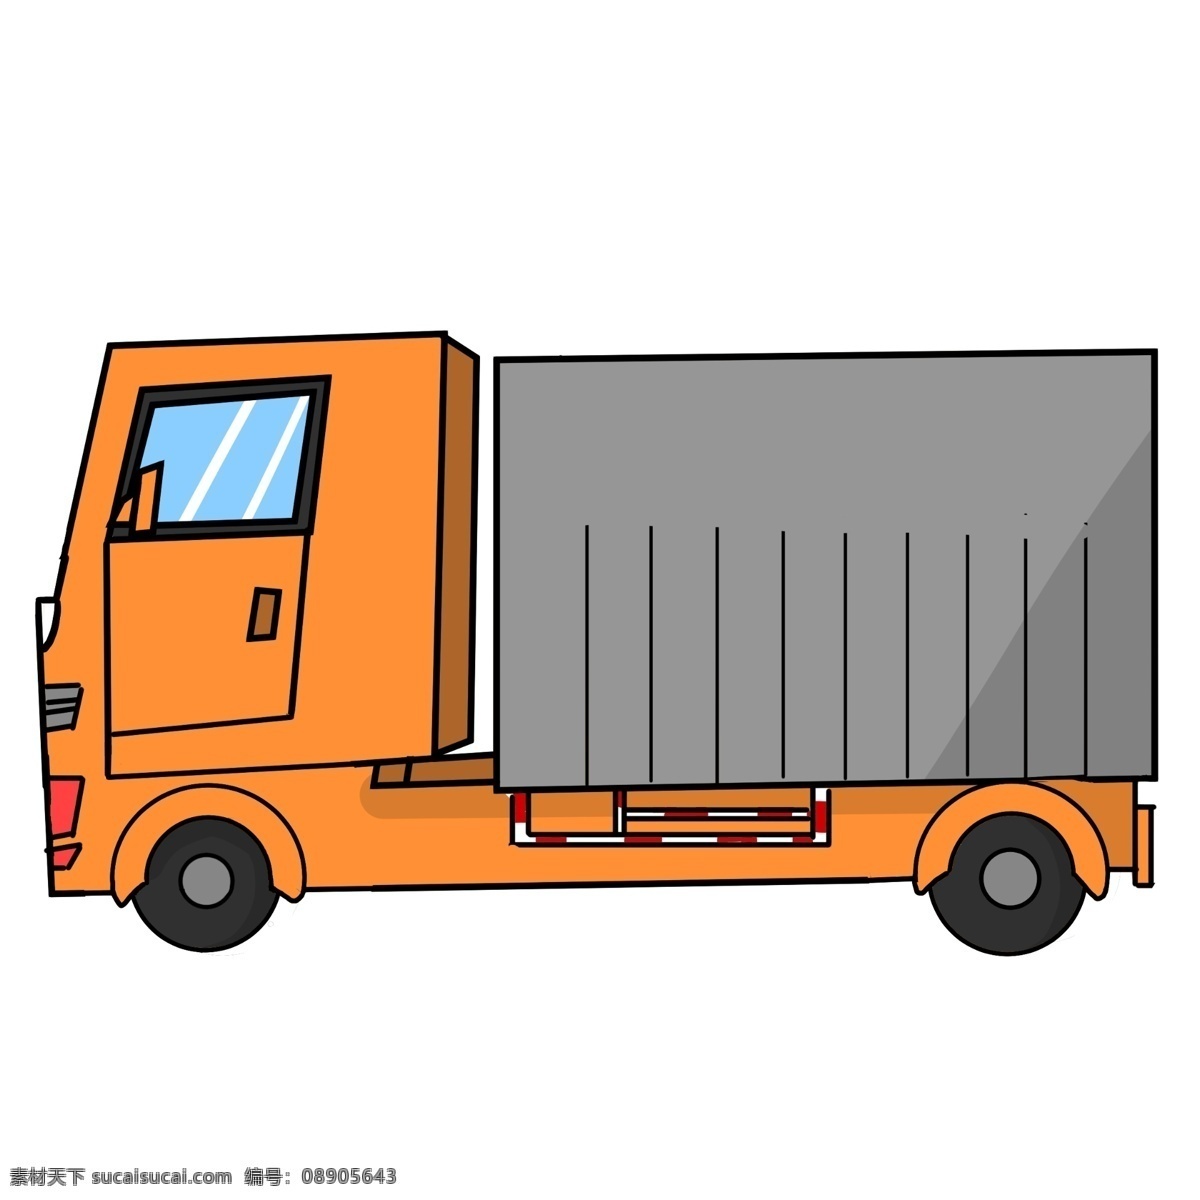 辆 橙色 大 货车 插画 大货车 一辆货车 橙色大货车 运输货车 汽车 交通运输 海鲜运输车